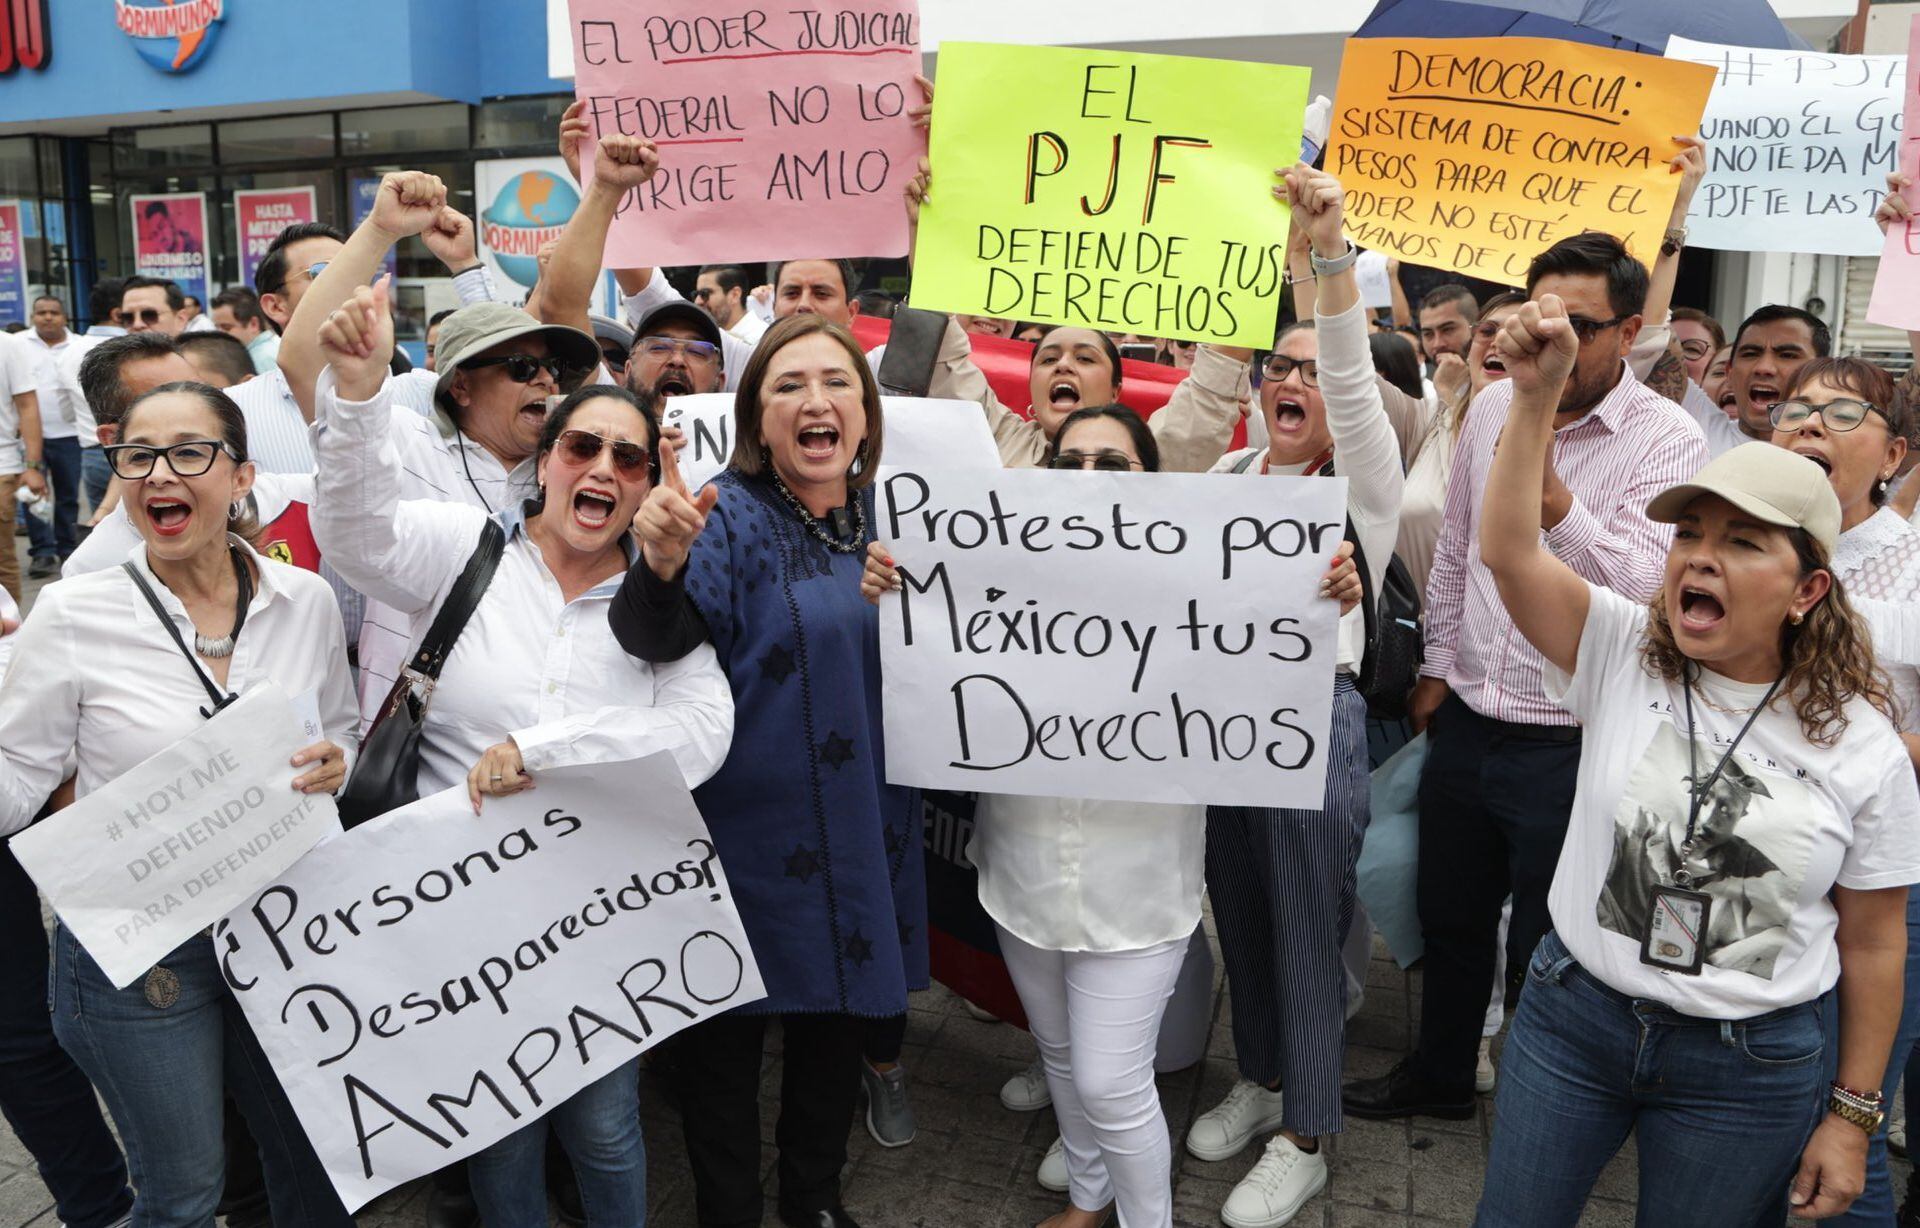 La senadora y aspirante a la presidencia se unió a las manifestaciones de los trabajadores del Poder Judicial (X @XochitlGalvez)